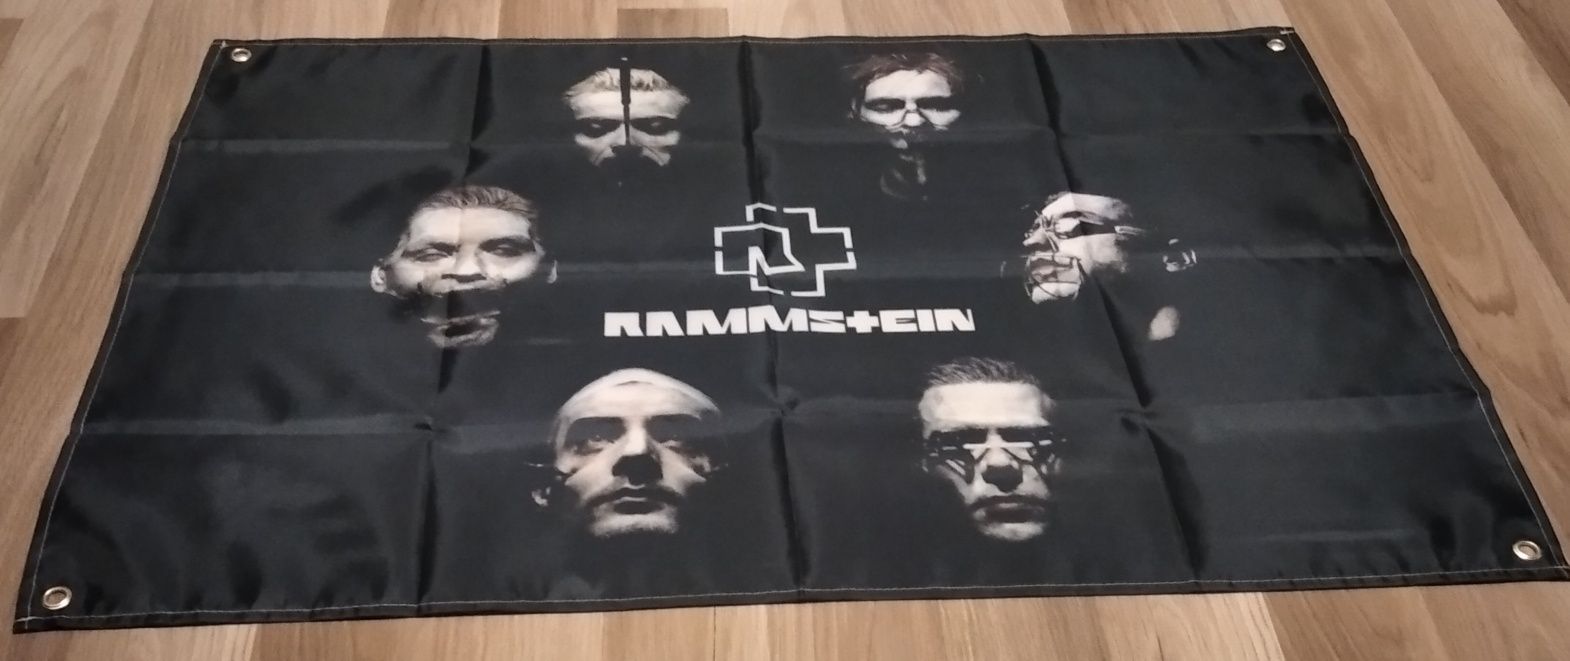 Plakat materiałowy Rammstein 90x60cm